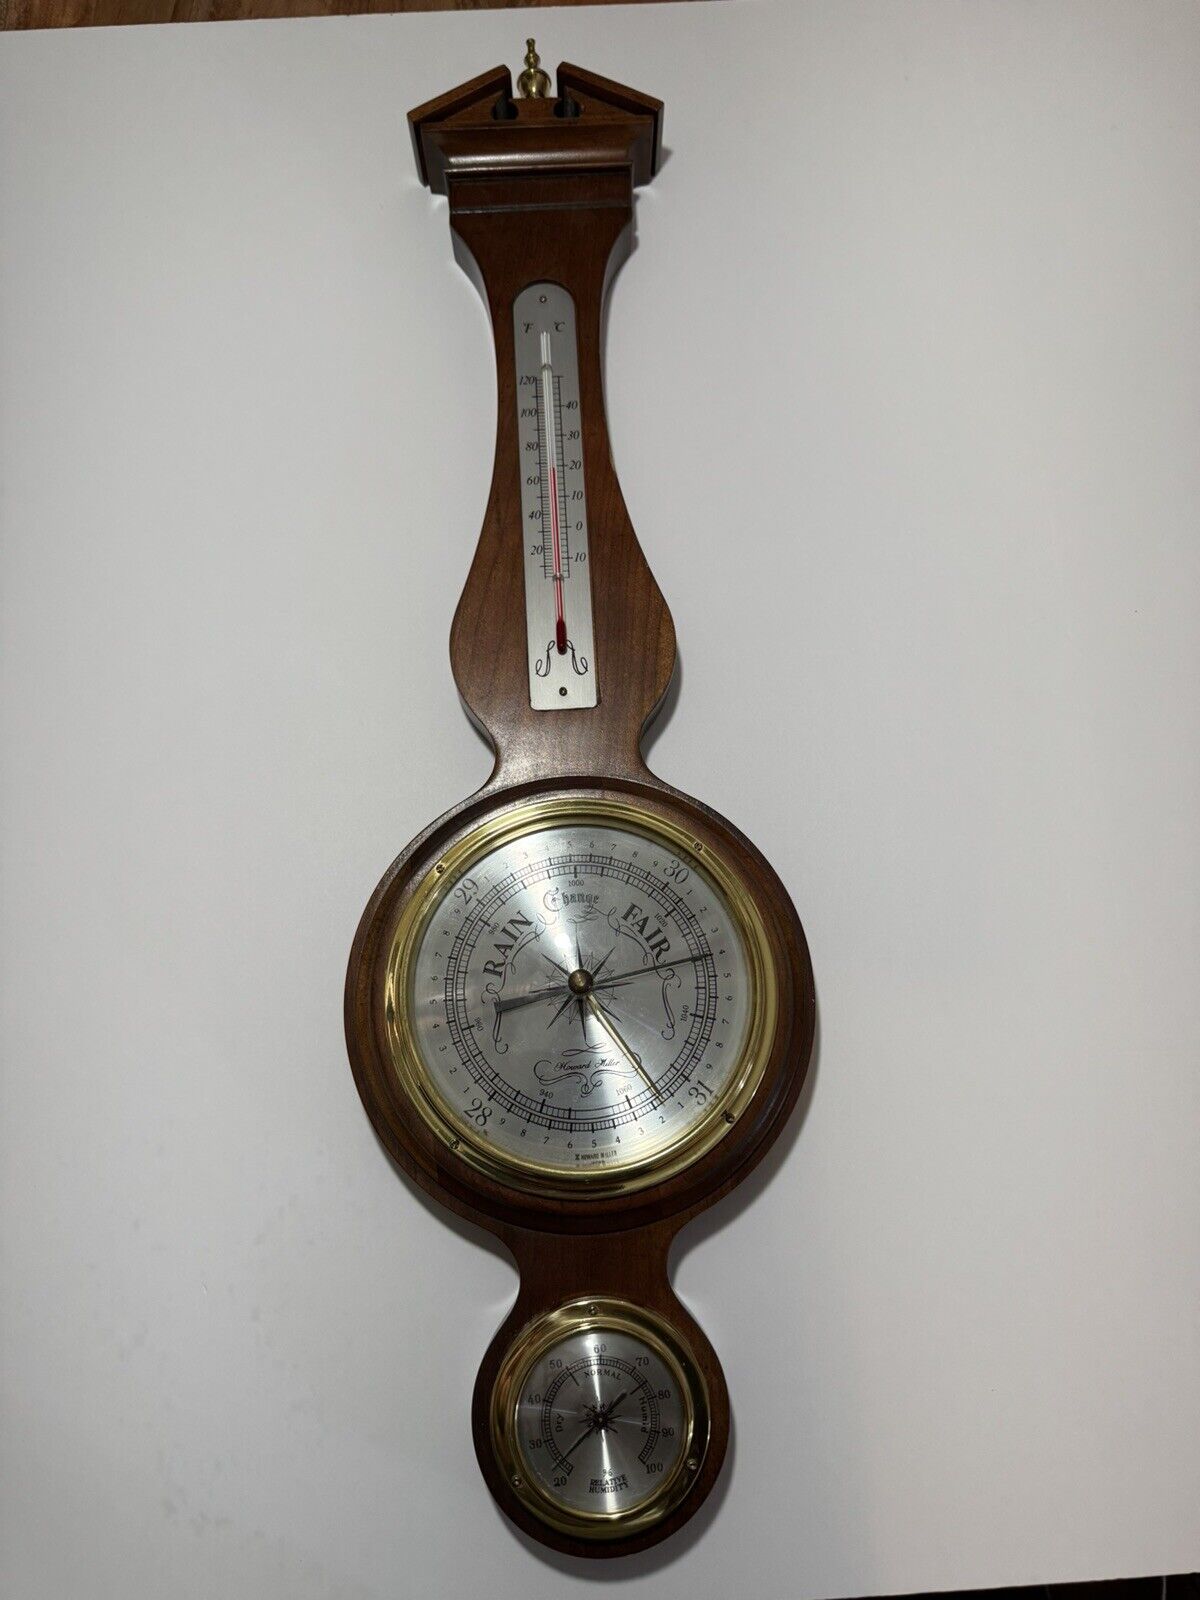 Vintage Howard Miller Barometer Thermometer Hygrometer Weather Station 612-712